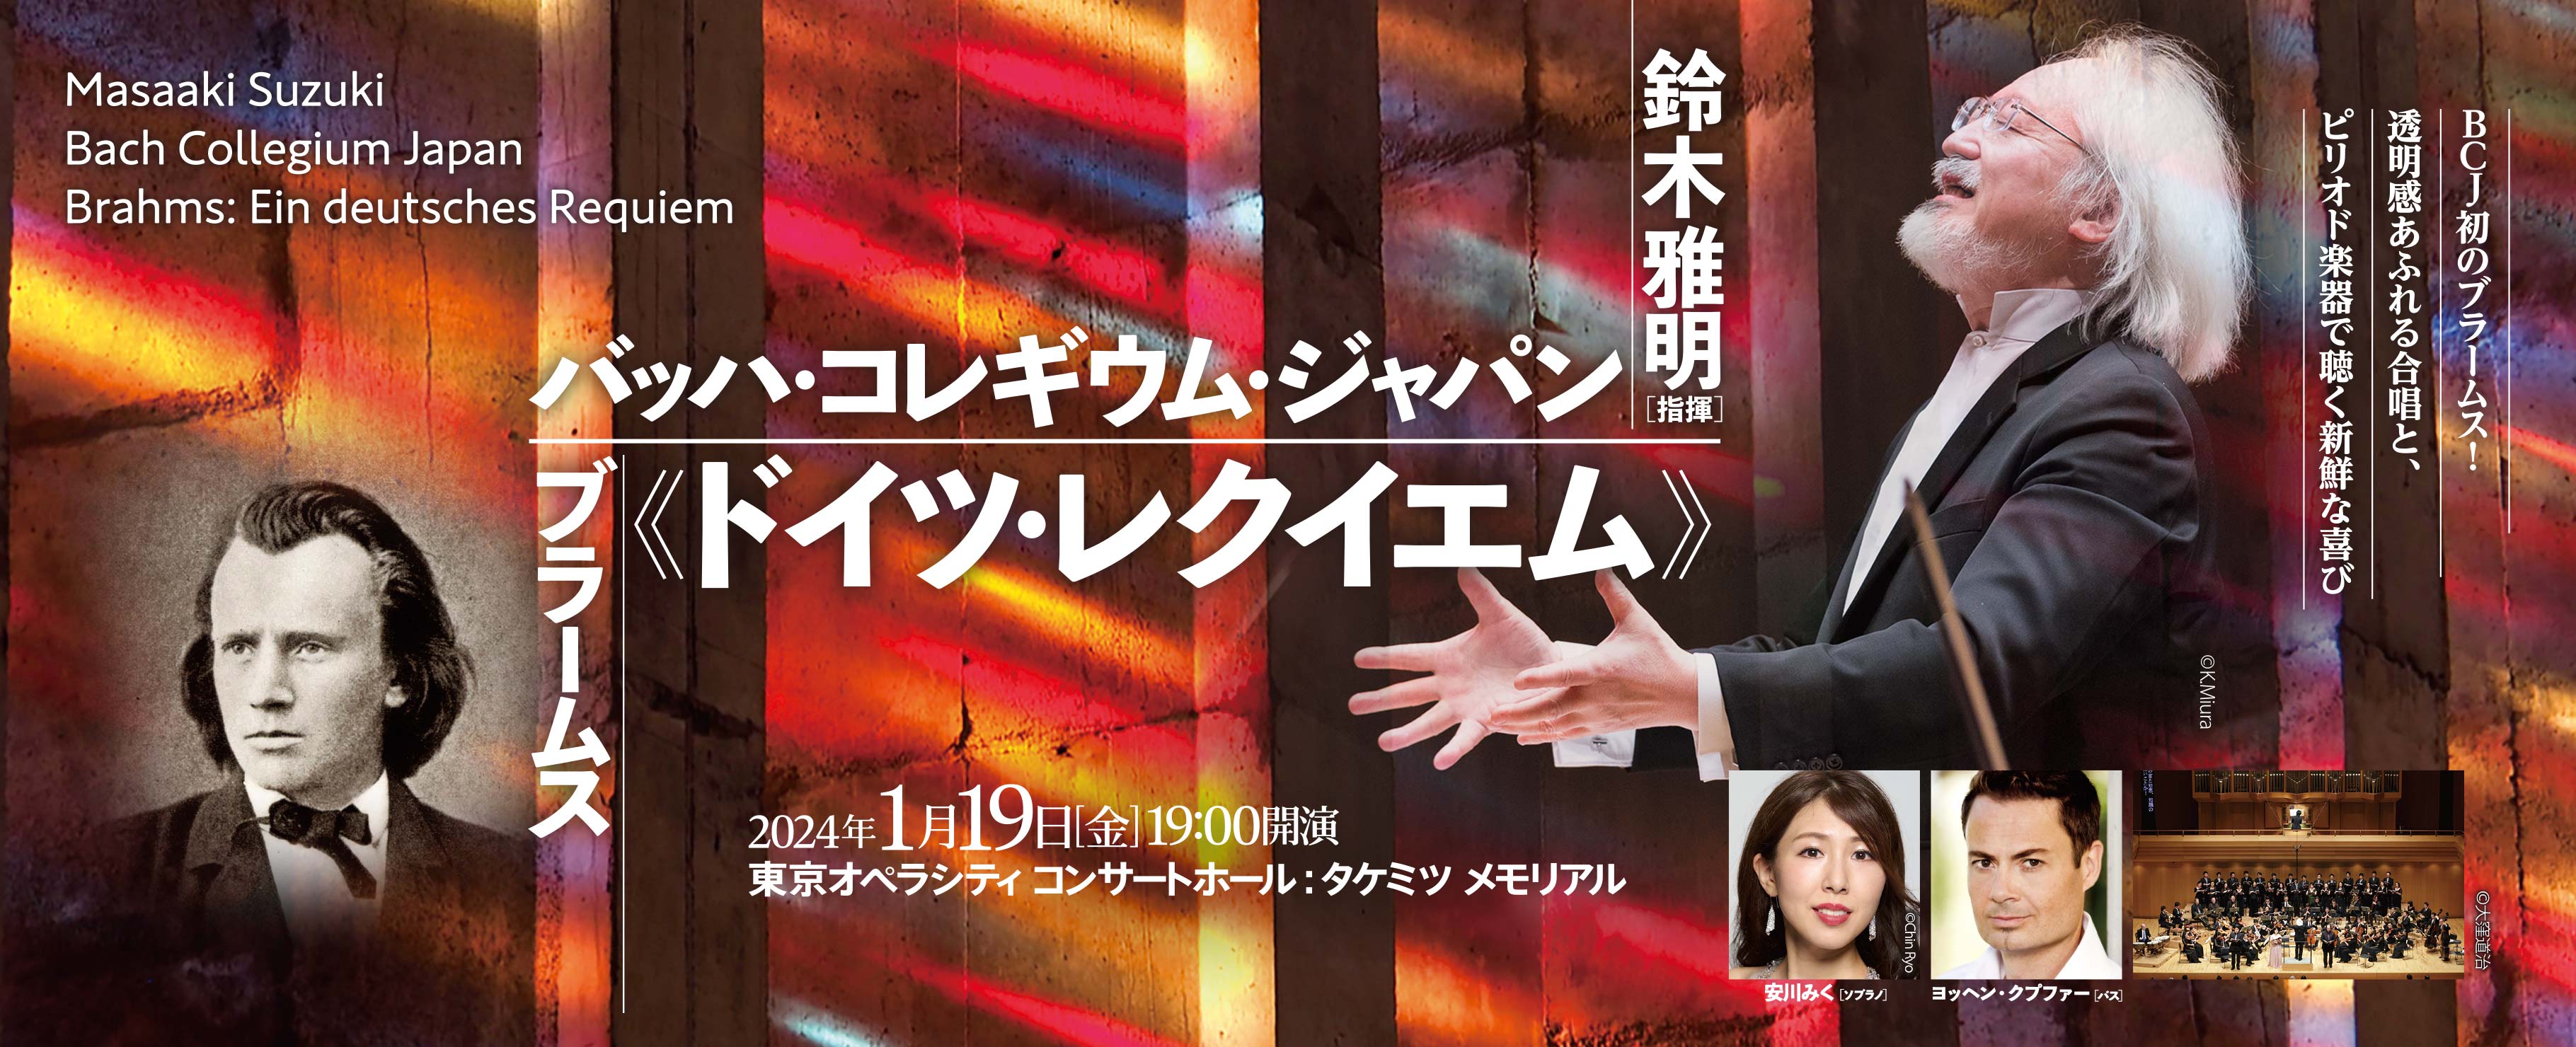 Masaaki Suzuki Bach Collegium Japan Brahms: Ein deutsches Requiem